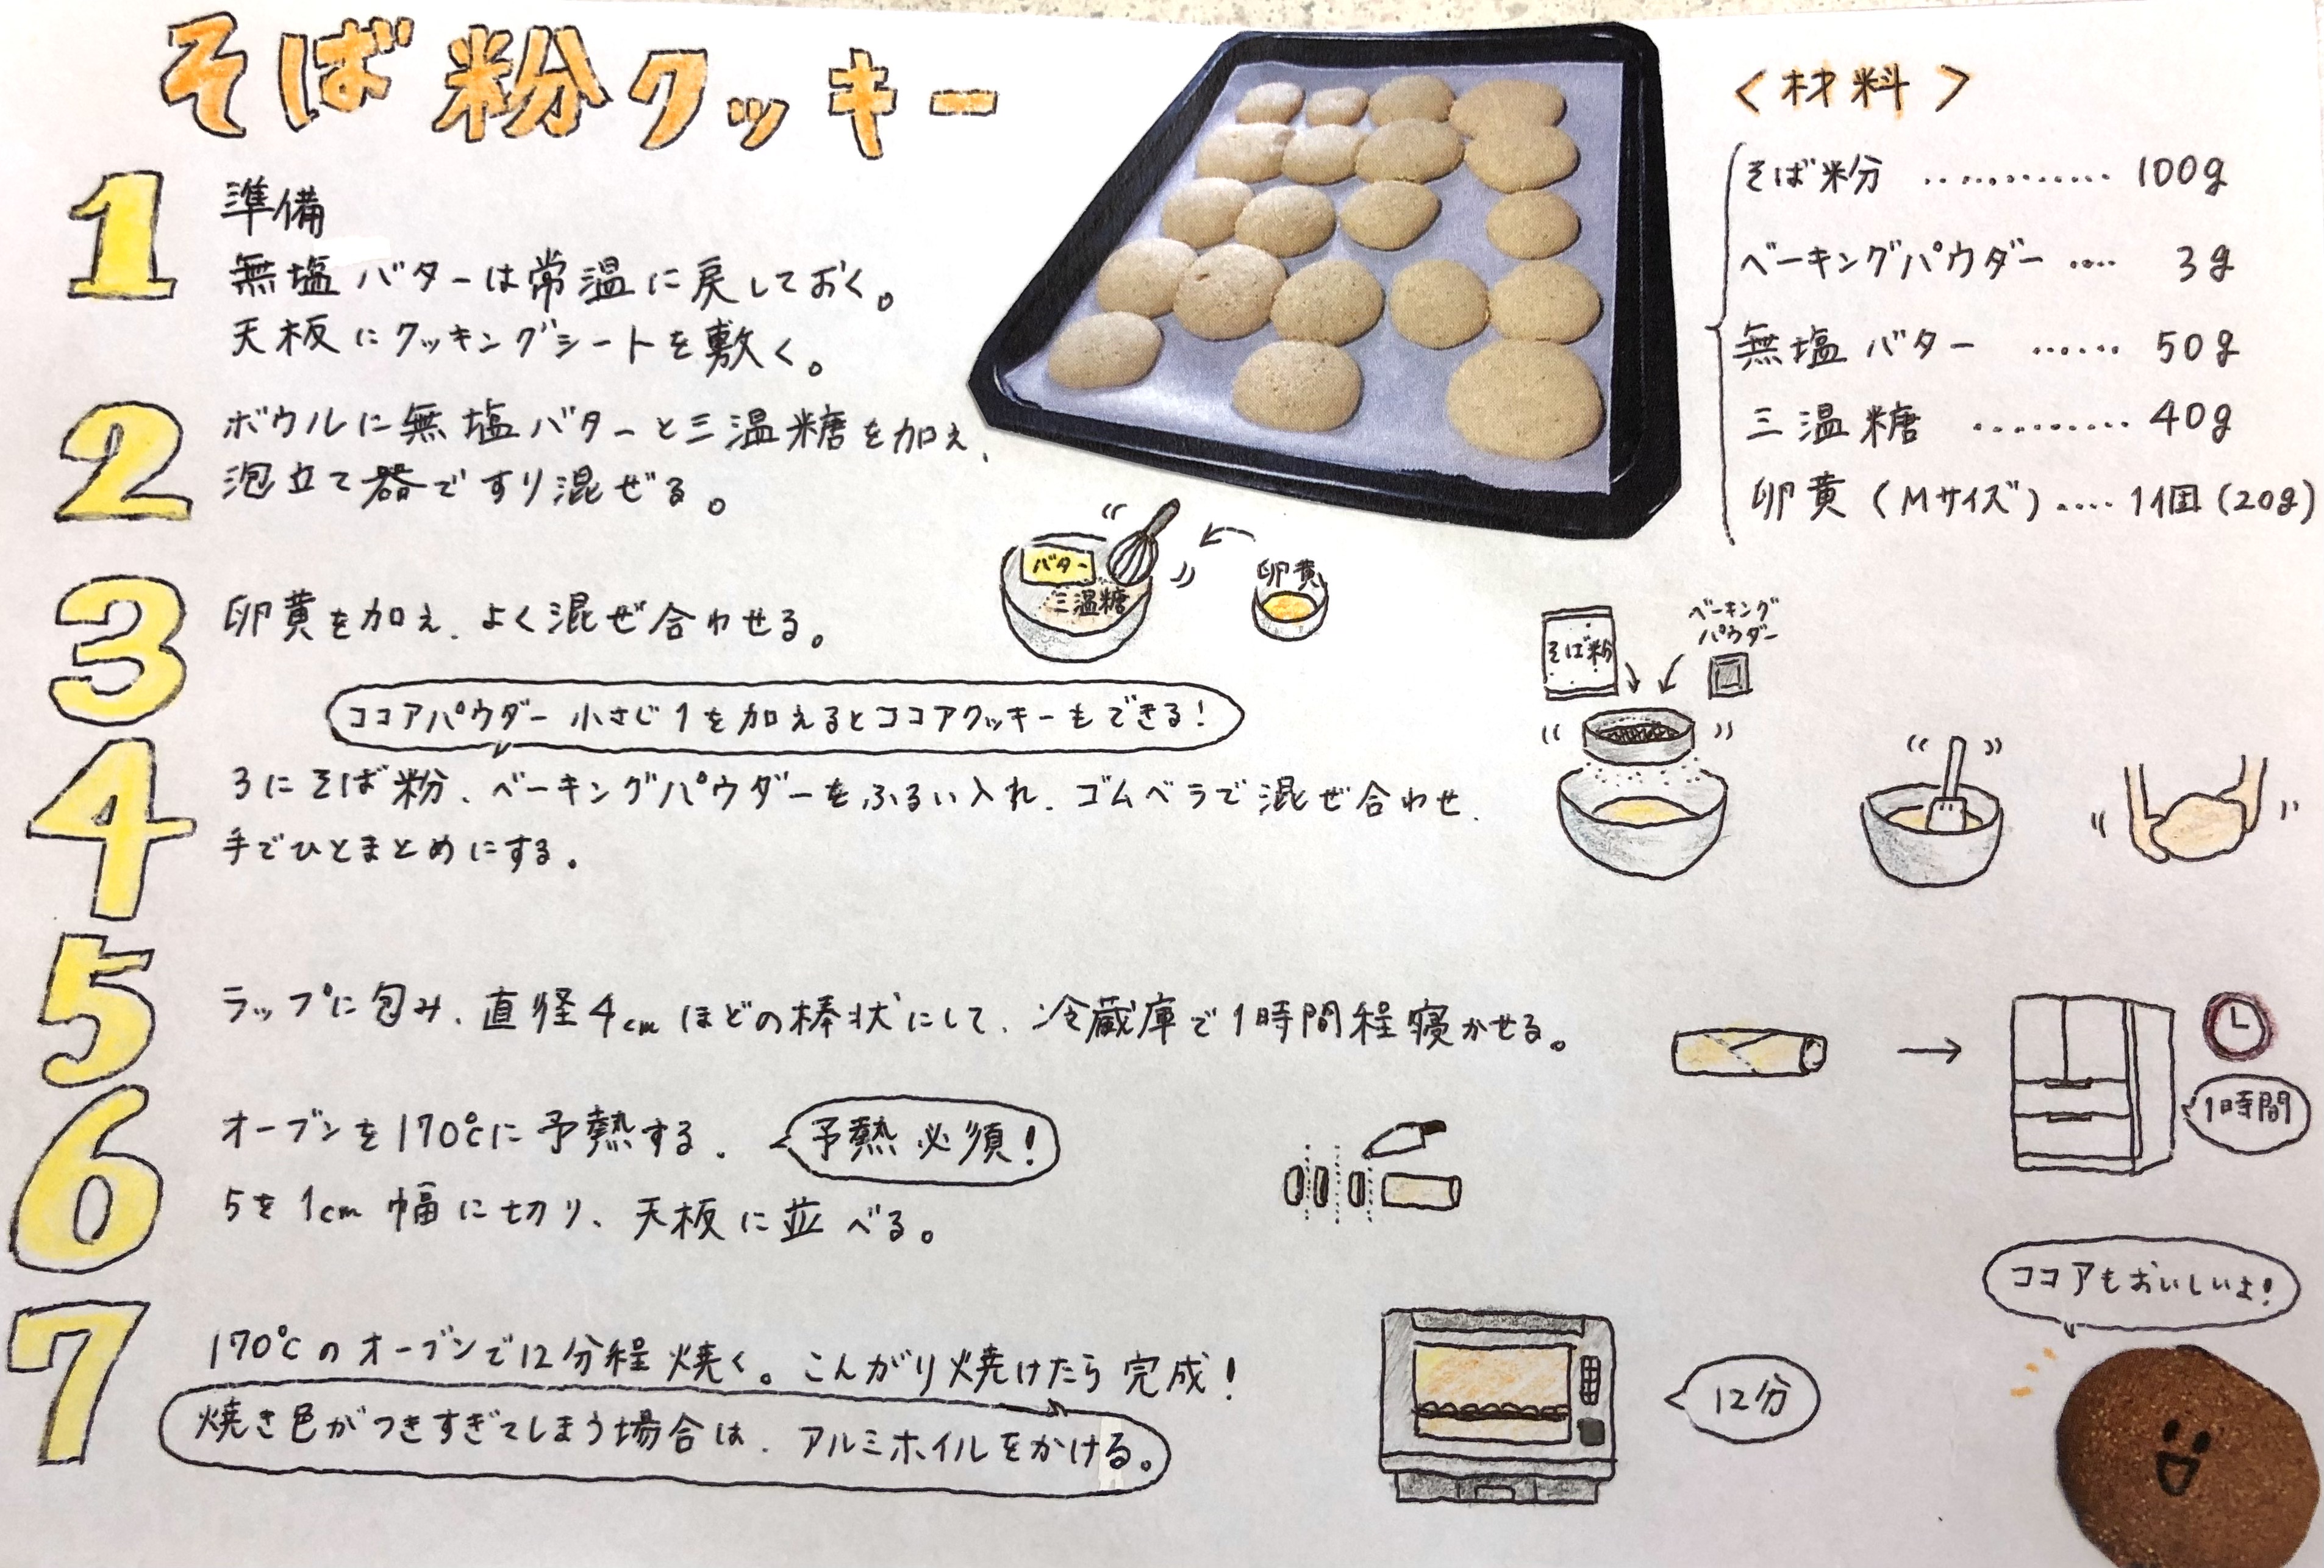 【レシピ】そば粉クッキーのつくり方